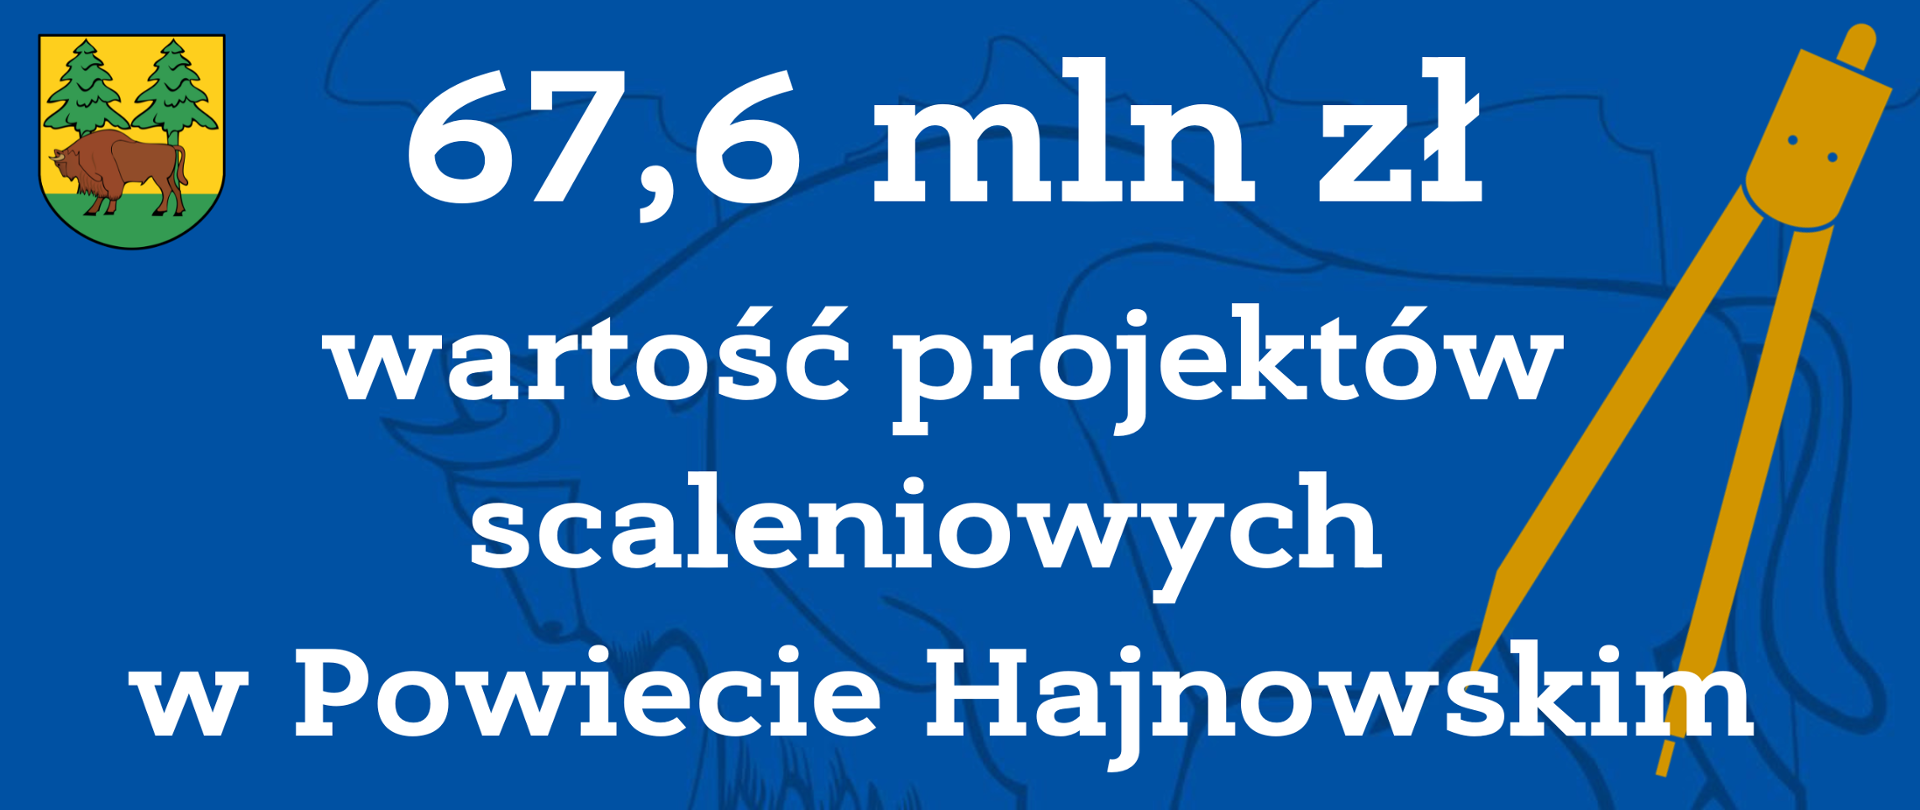 67,6 mln zł
wartość projektów scaleniowych
w Powiecie Hajnowskim